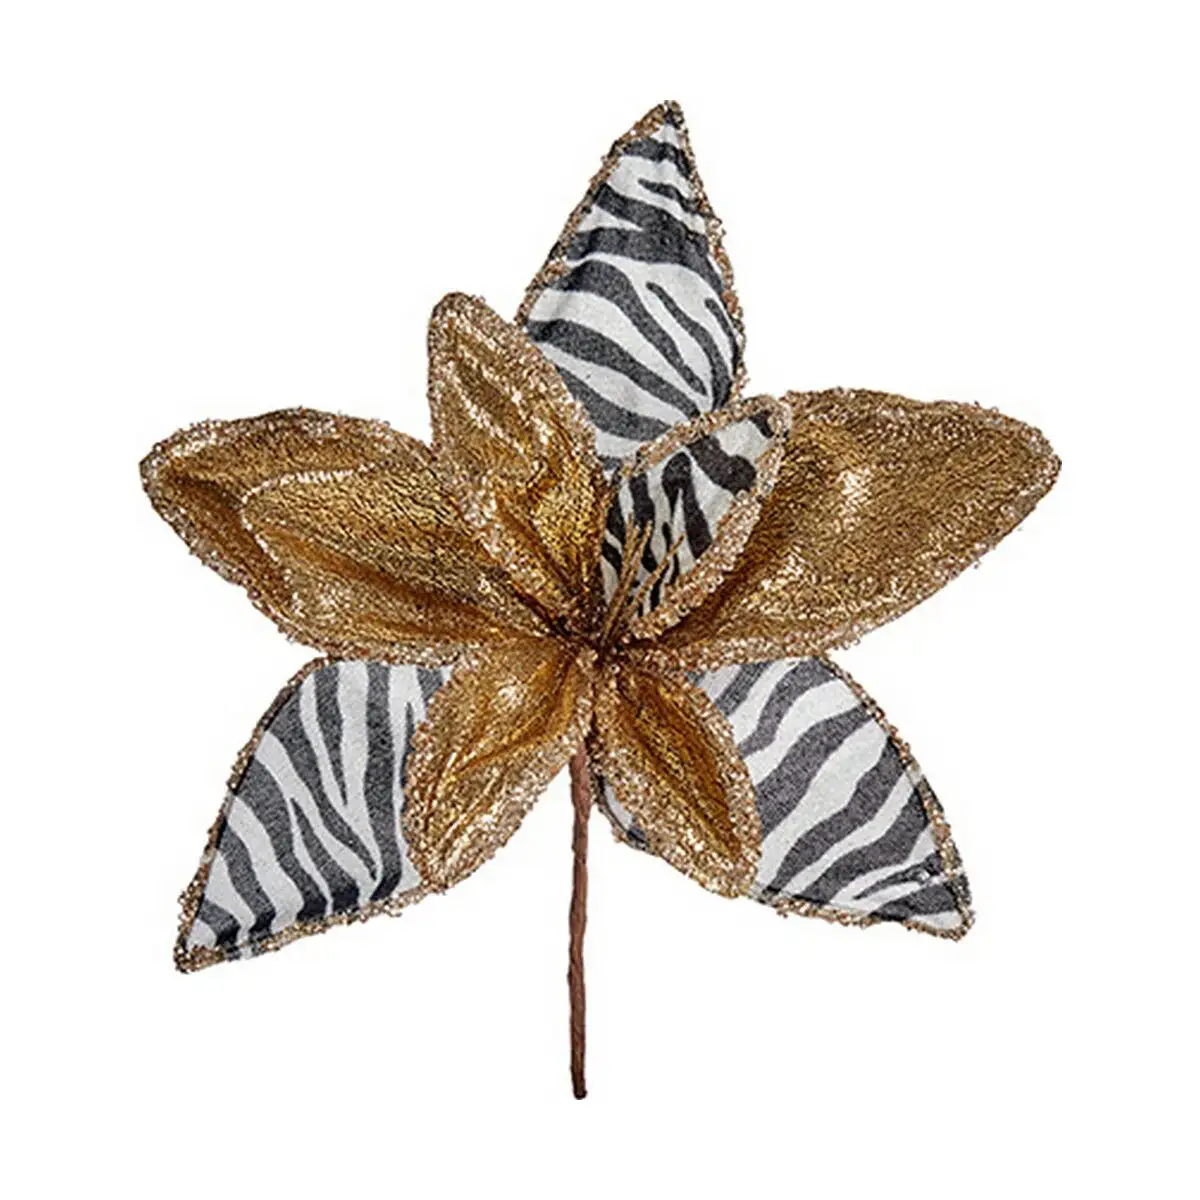 Fleur decorative zebre noel dore blanc 35 x 35 x 35 cm_4273. Bienvenue sur DIAYTAR SENEGAL - Là où le Shopping Devient une Aventure. Explorez notre catalogue et dénichez des trésors qui élargiront votre horizon shopping.